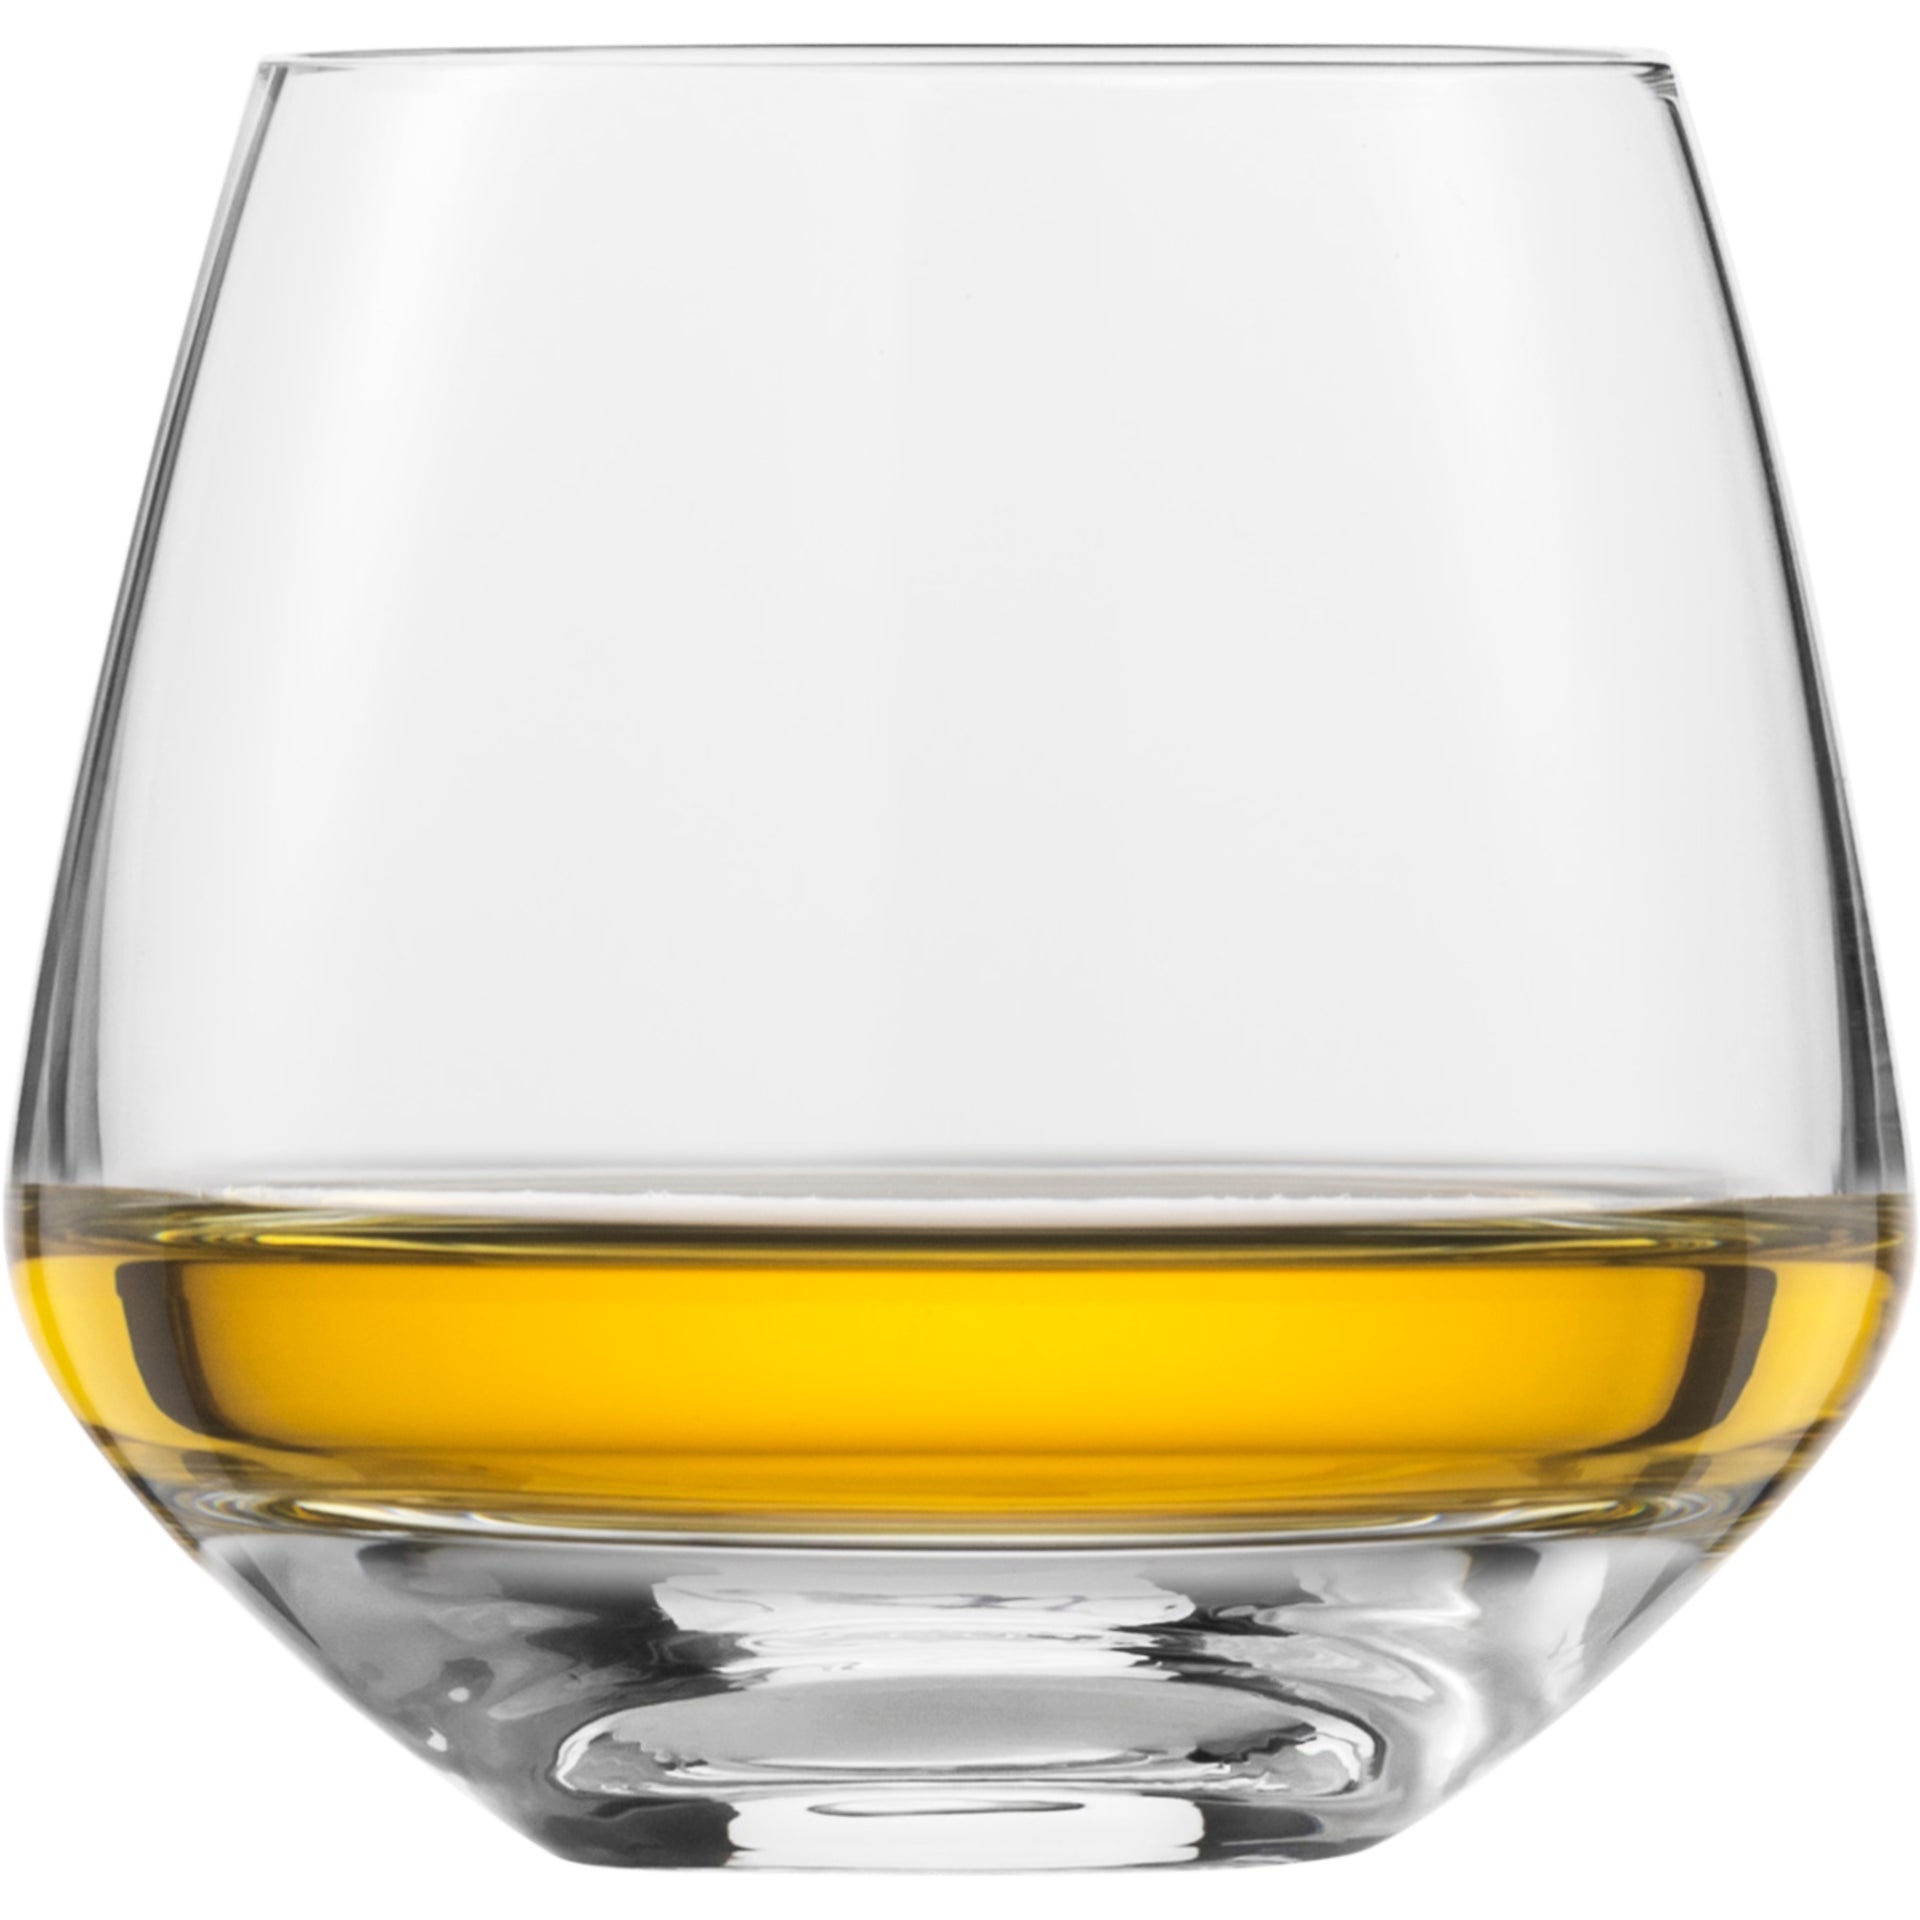 Eisch Whiskyglas Sky SENSISPLUS - 2 Stück im Geschenkkarton 518/14